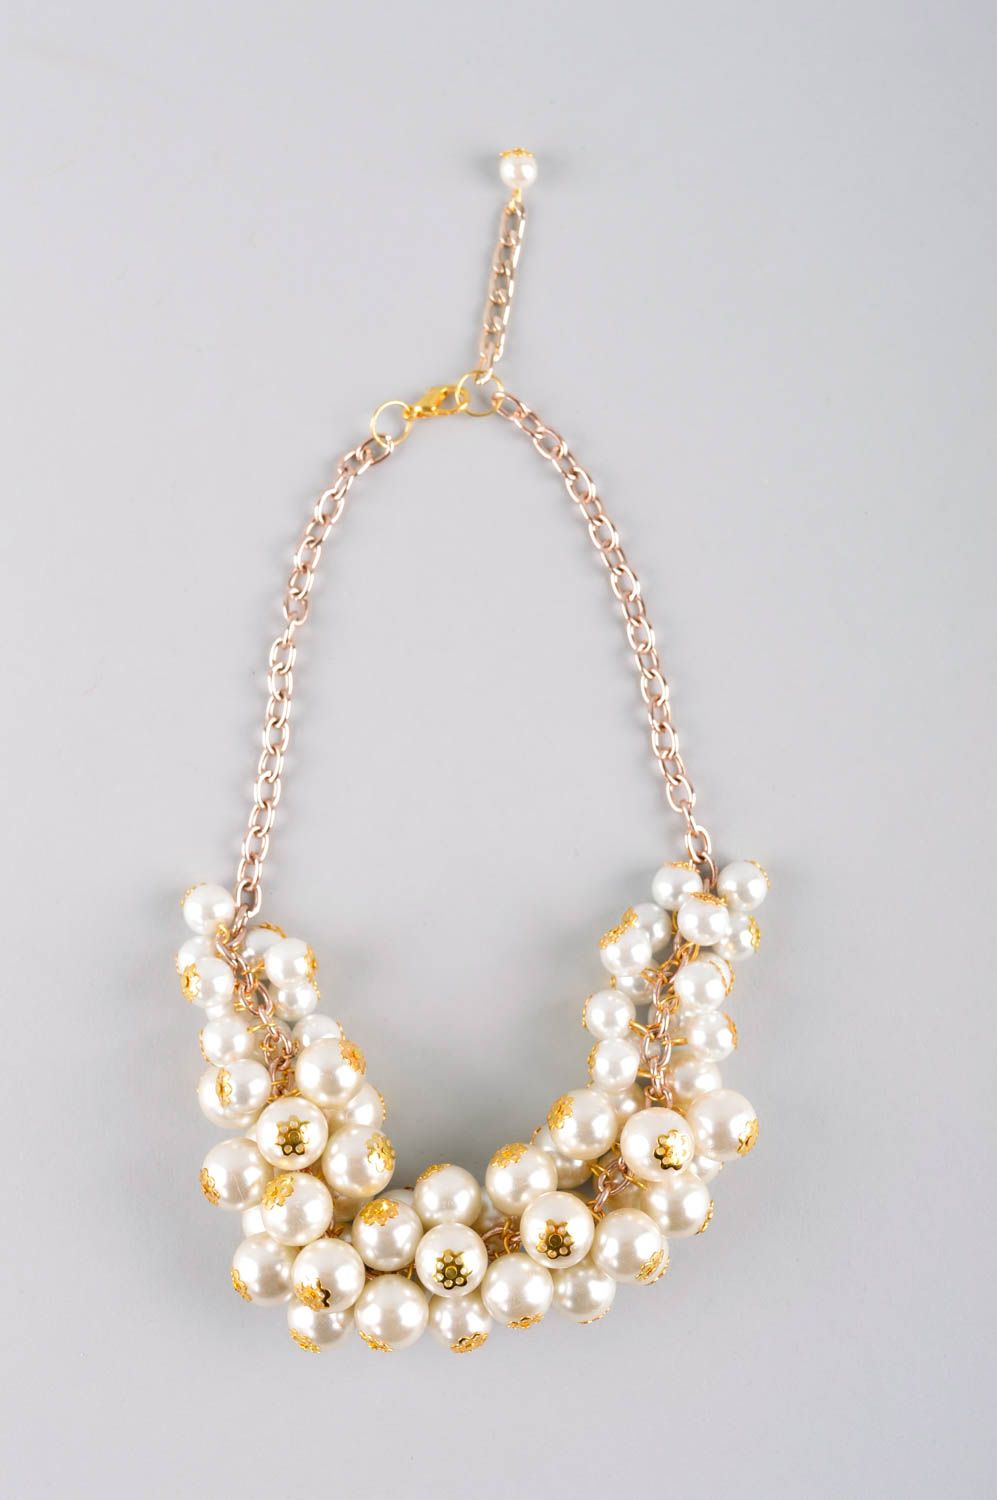 Handmade elegant massive necklace stylish beaded necklace unusual jewelry photo 2